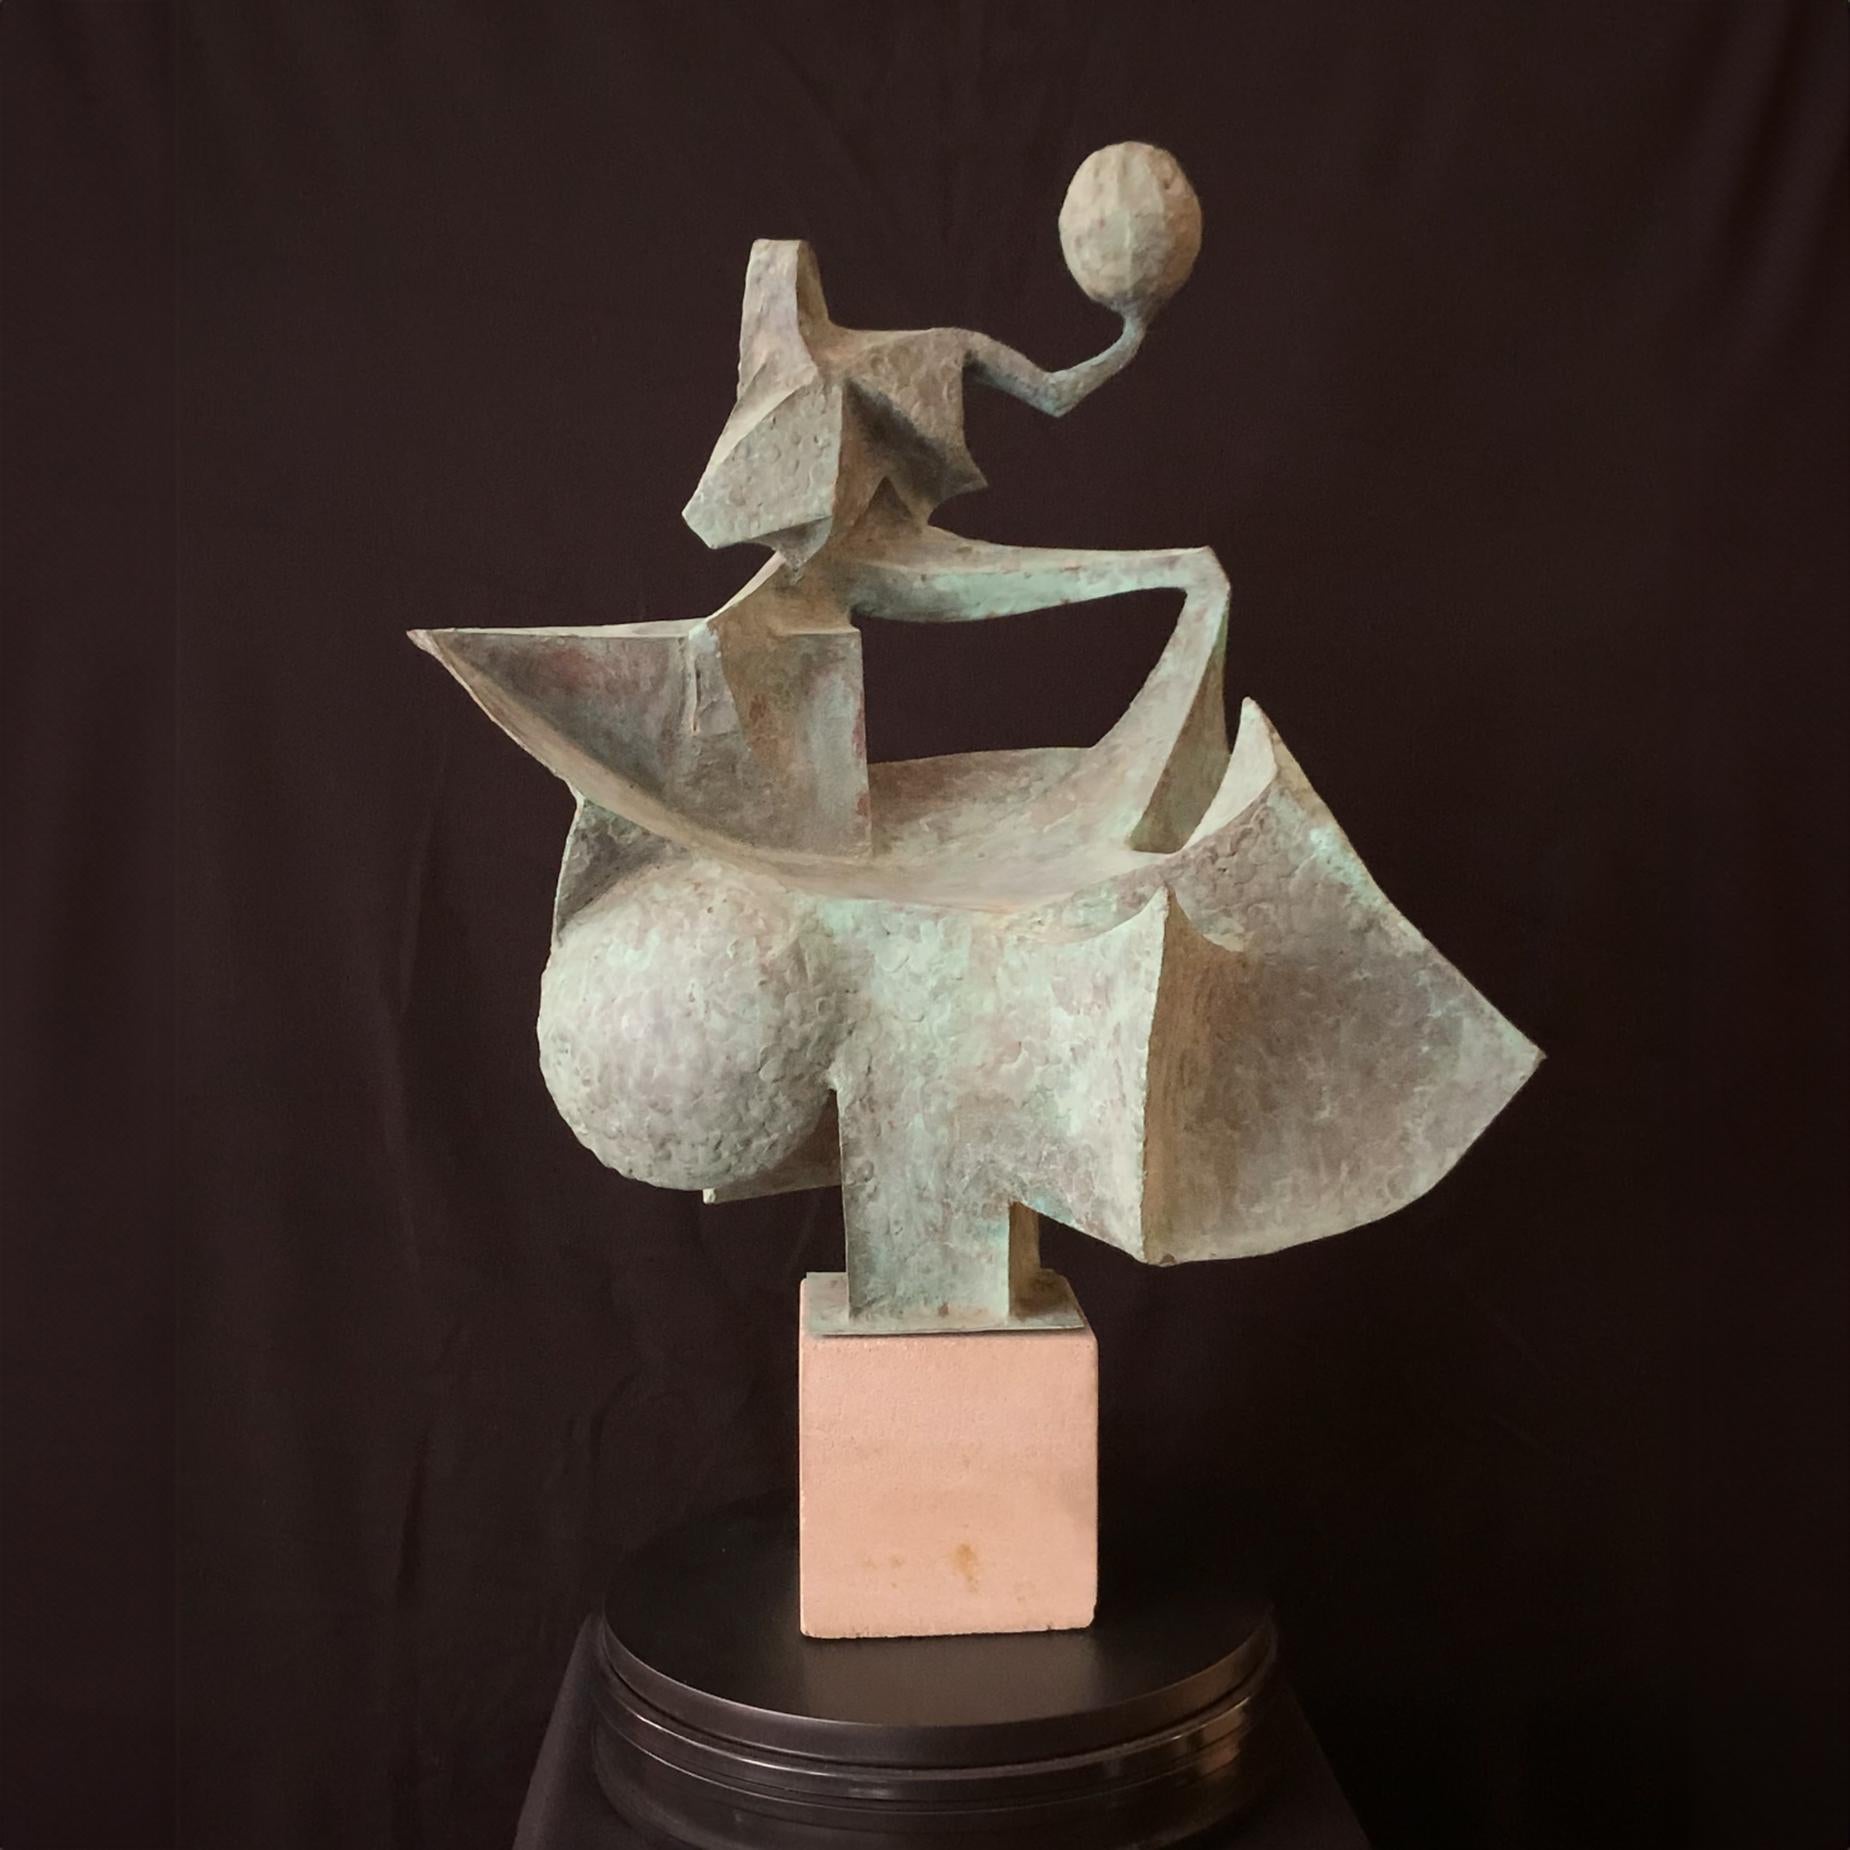 „Abstrakte figurale Skulptur“, Paris, Art Institute of Chicago, Michigan – Sculpture von Clyde Ball